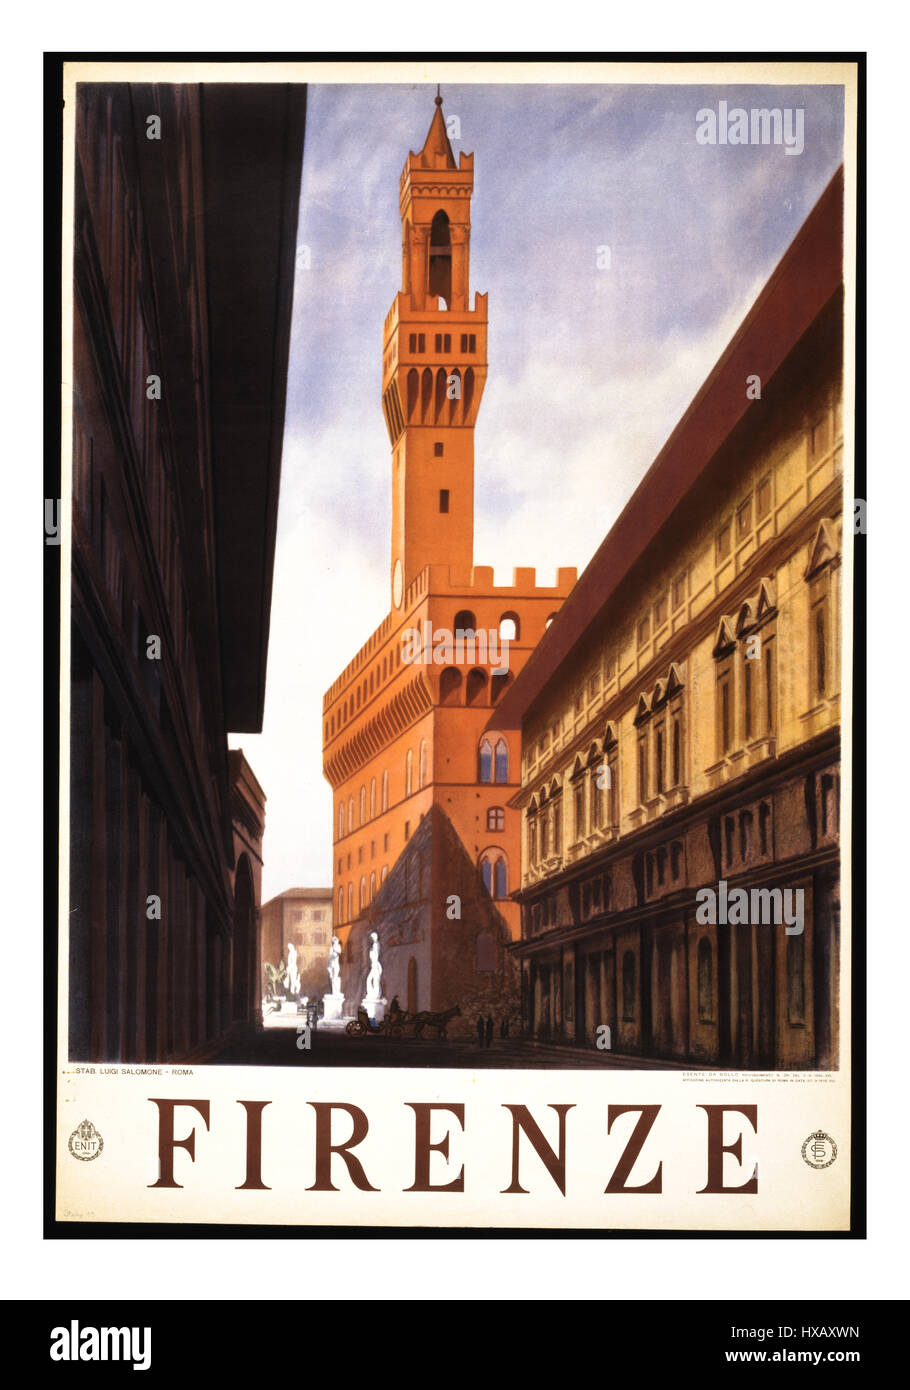 Vintage Retro-Reise-Plakat für Firenze Florenz mit Palazzo Vecchio, das Rathaus von Florenz-Toskana-Italien Stockfoto